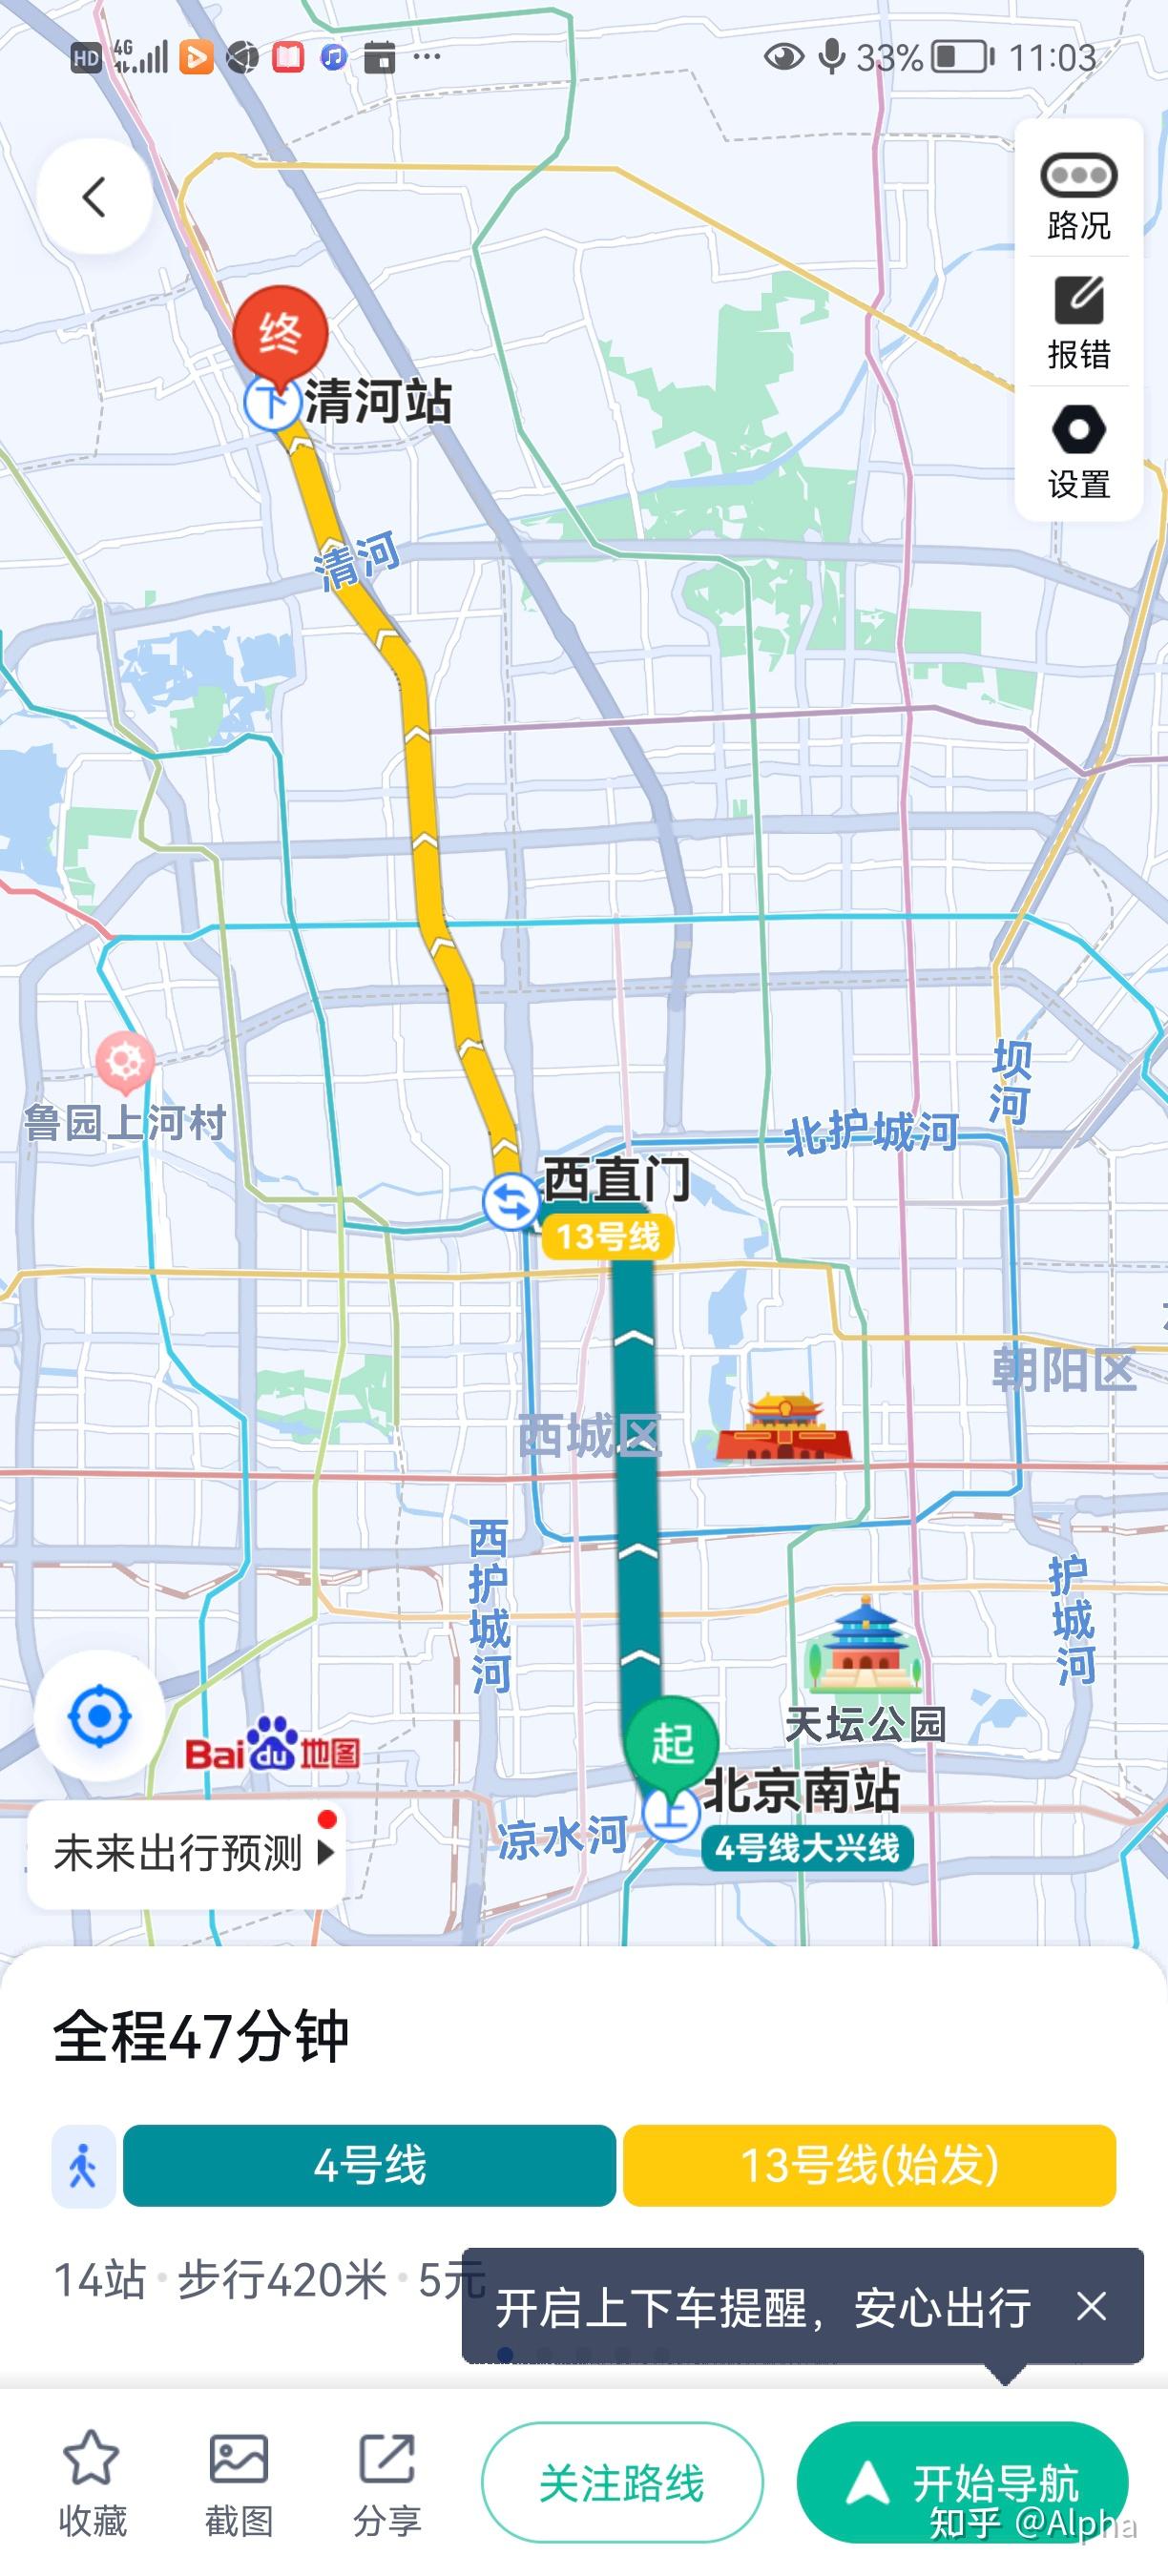 【火车运转】一天转遍北京站北京南站北京西站北京东站の花式运转 - 知乎